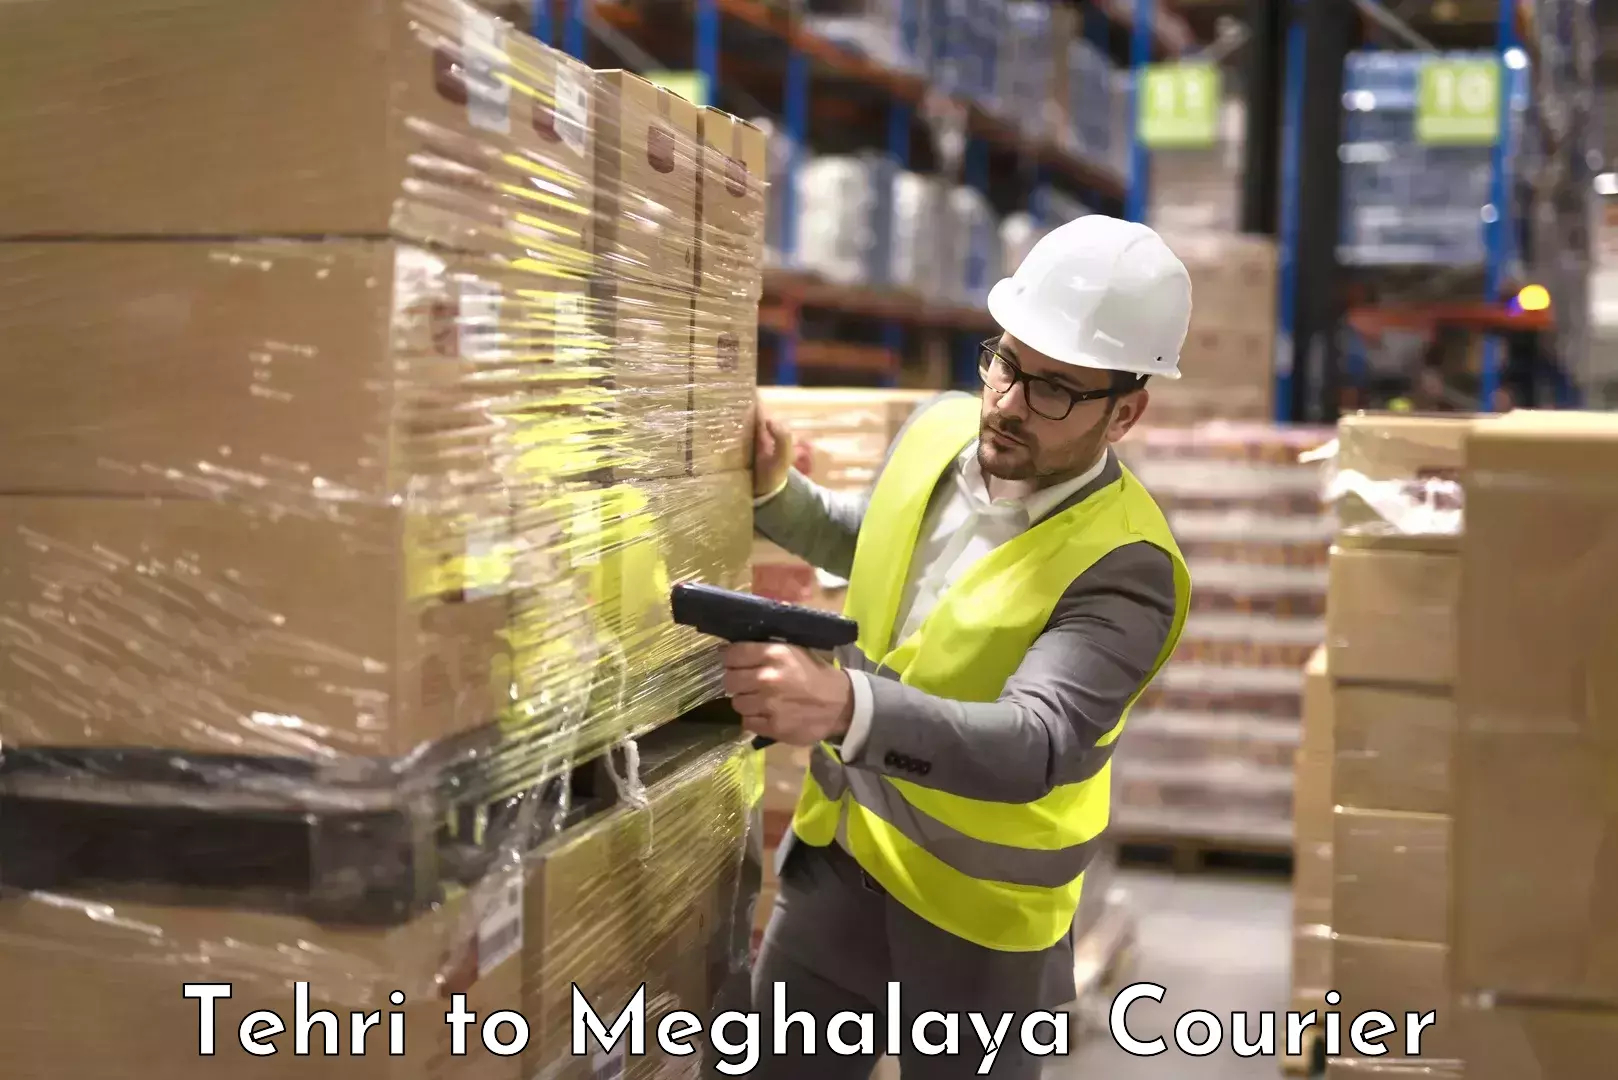 Baggage shipping experts Tehri to Meghalaya